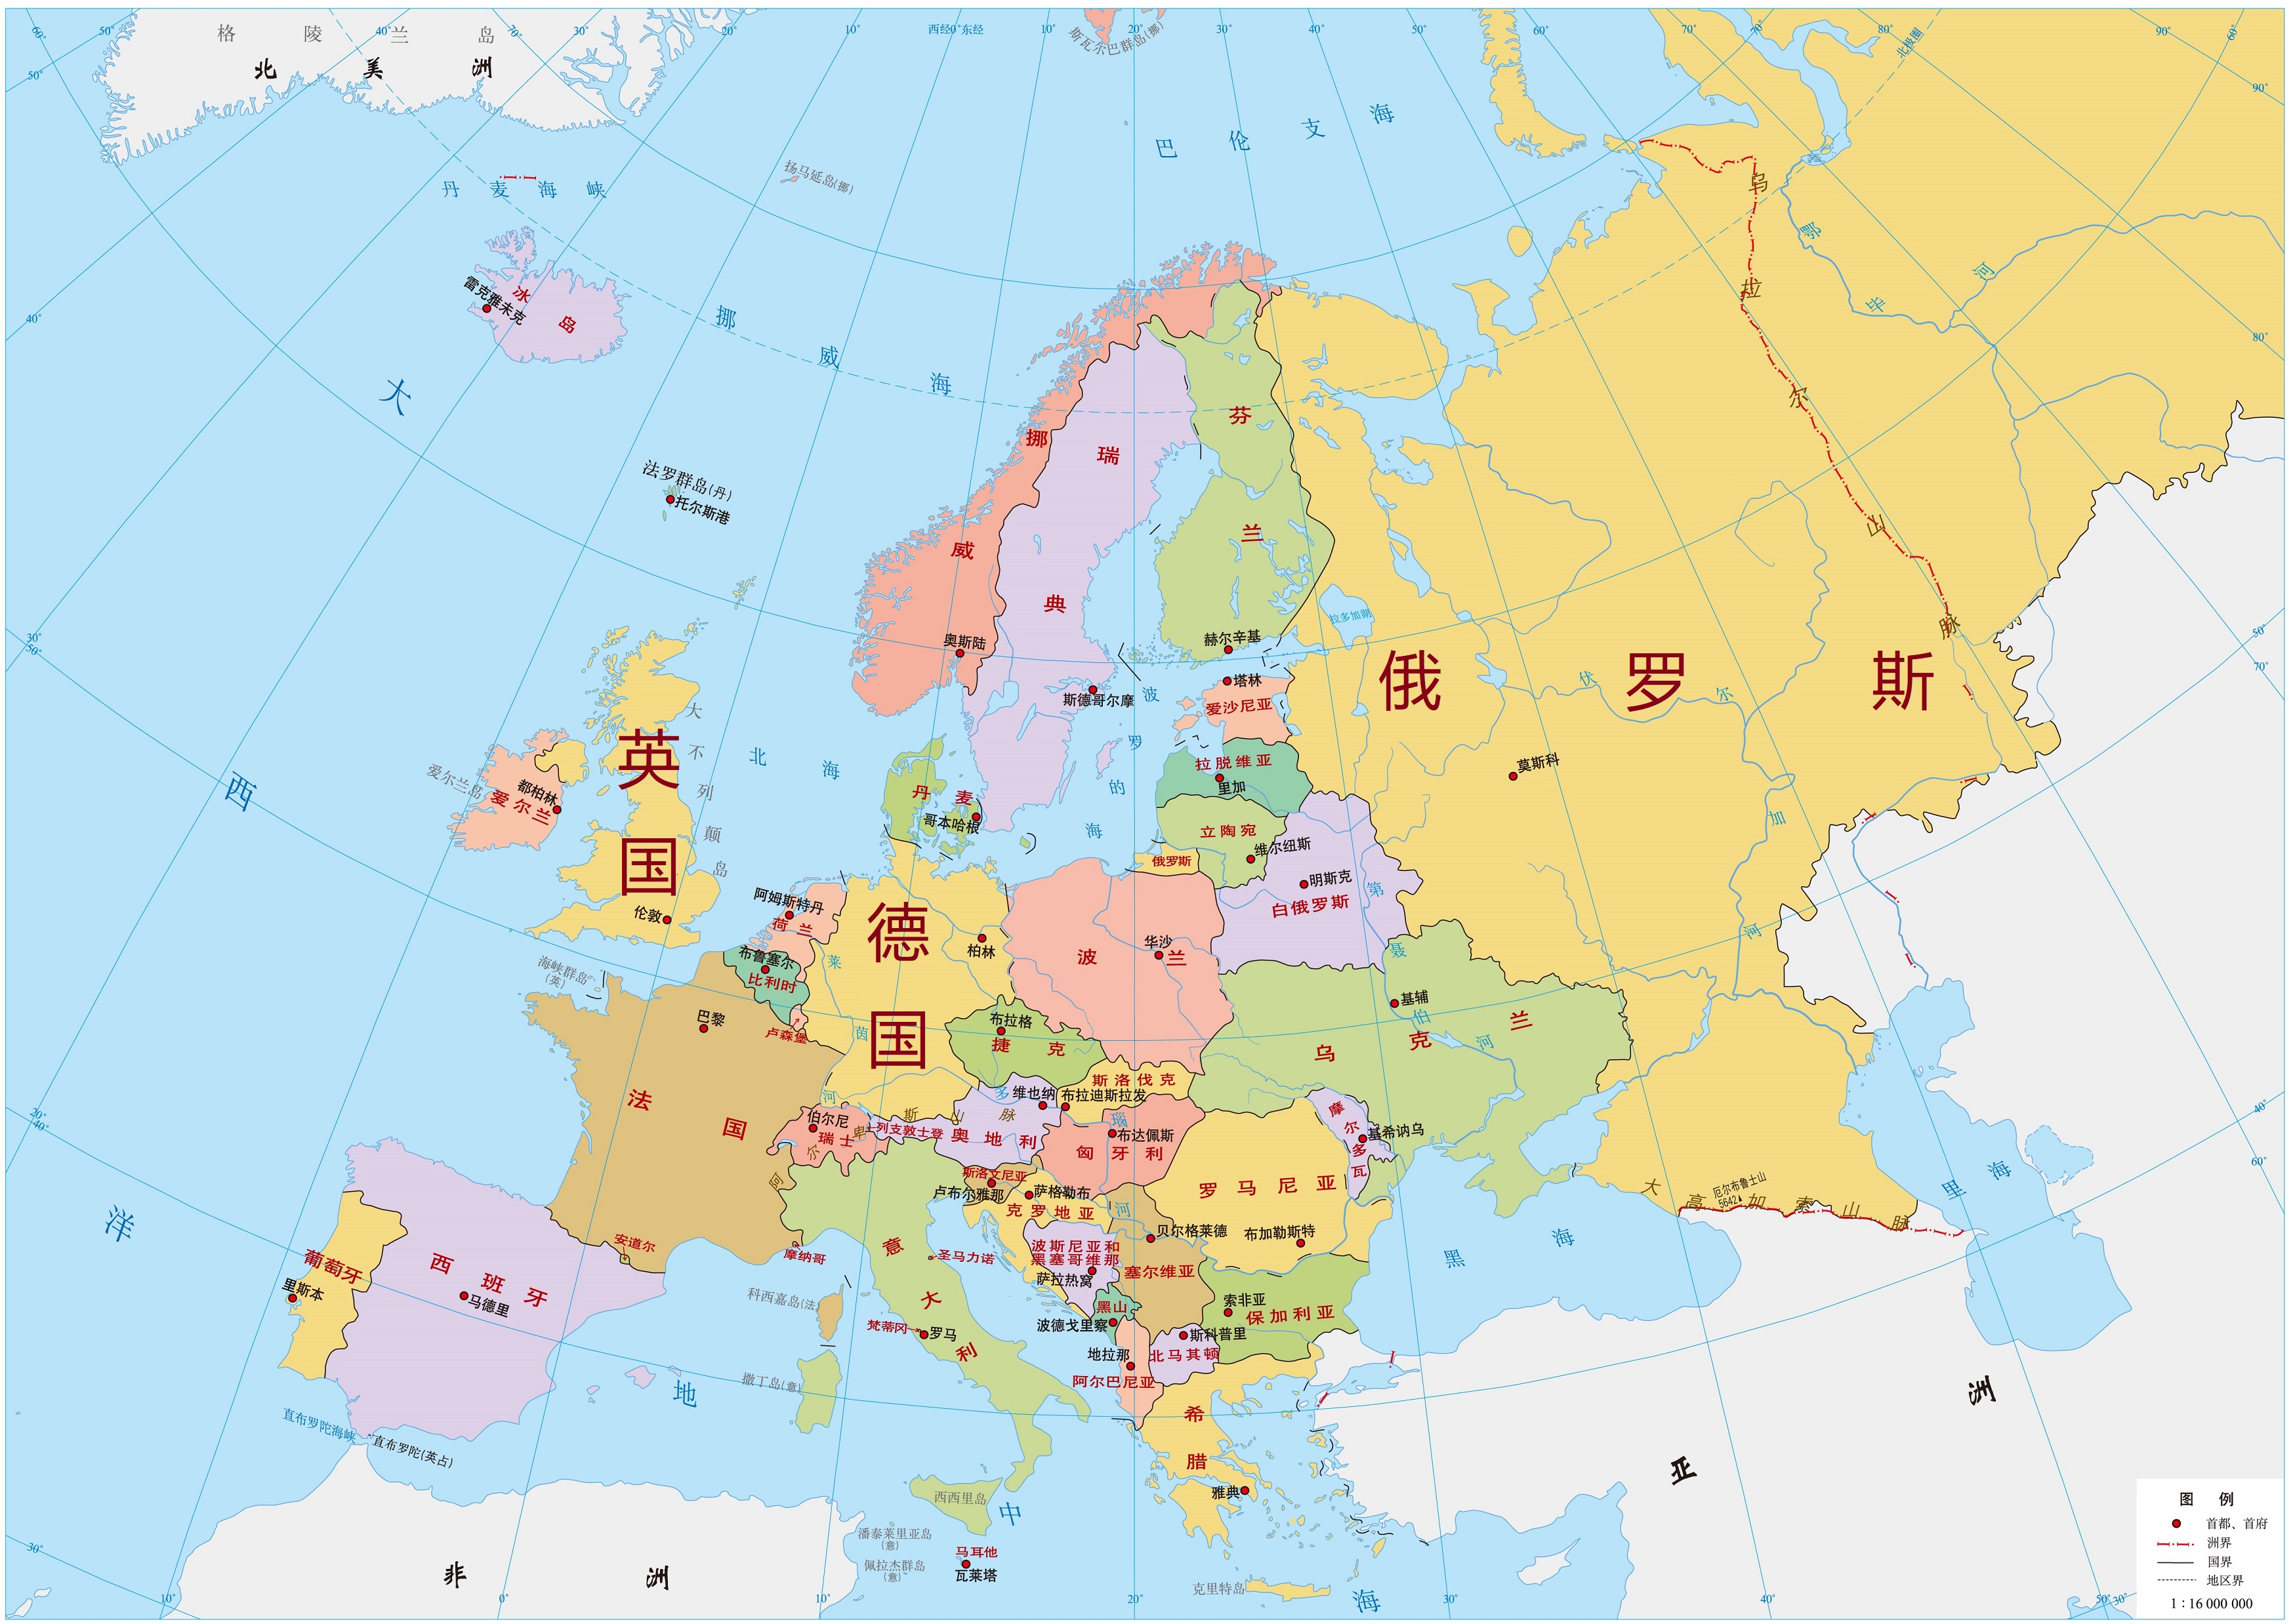 欧亚大陆国家分布地图图片